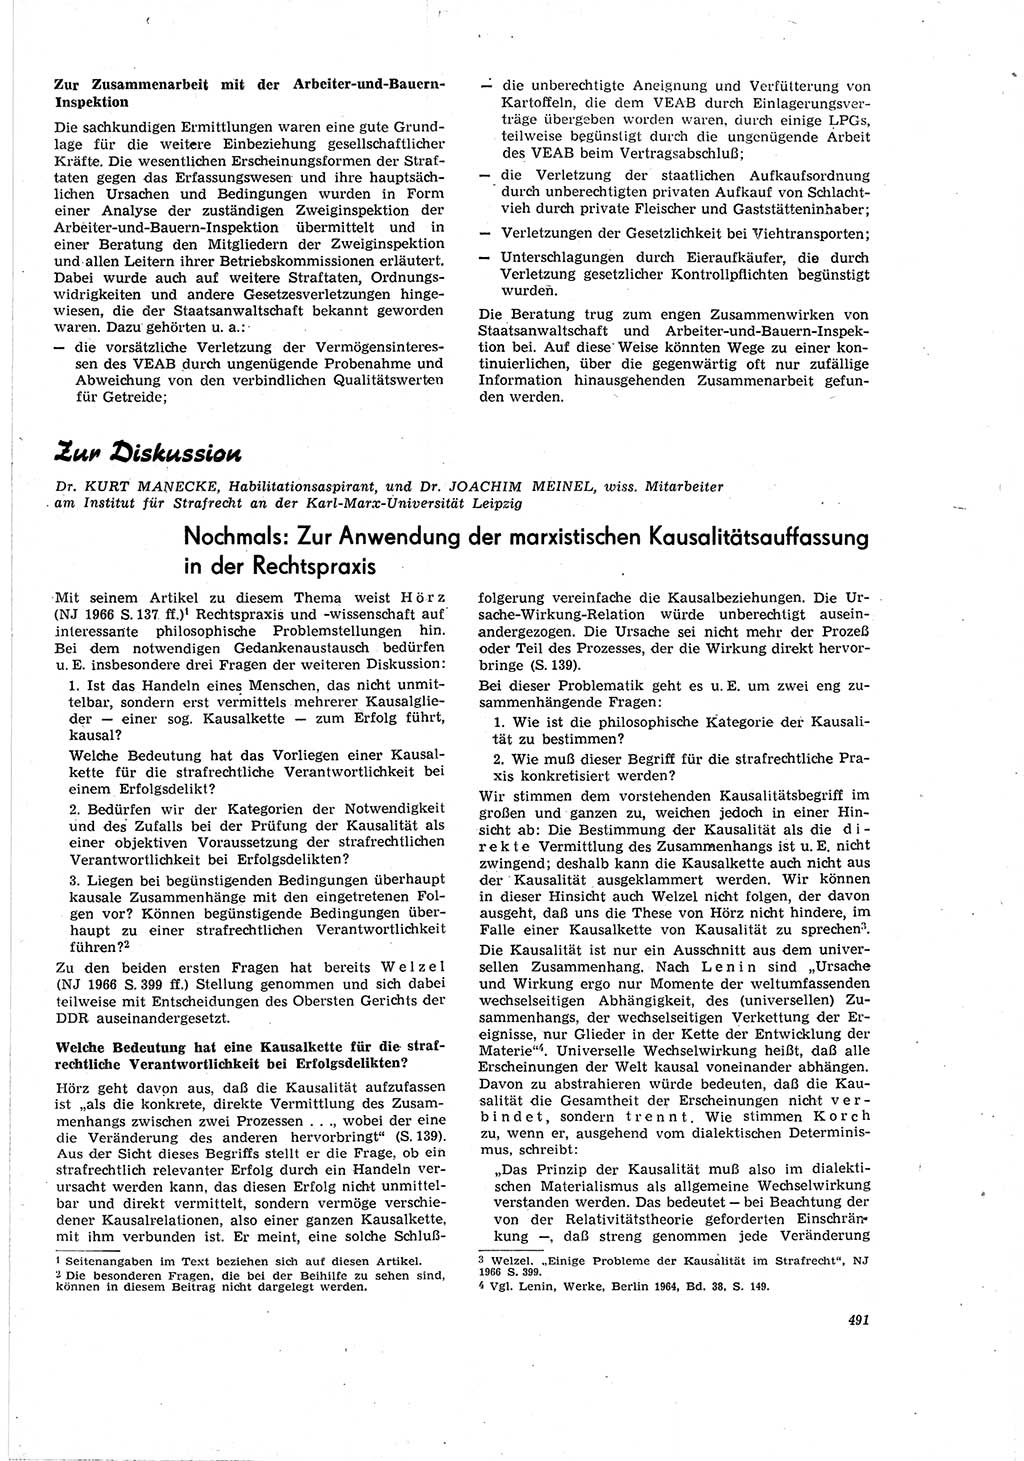 Neue Justiz (NJ), Zeitschrift für Recht und Rechtswissenschaft [Deutsche Demokratische Republik (DDR)], 20. Jahrgang 1966, Seite 491 (NJ DDR 1966, S. 491)